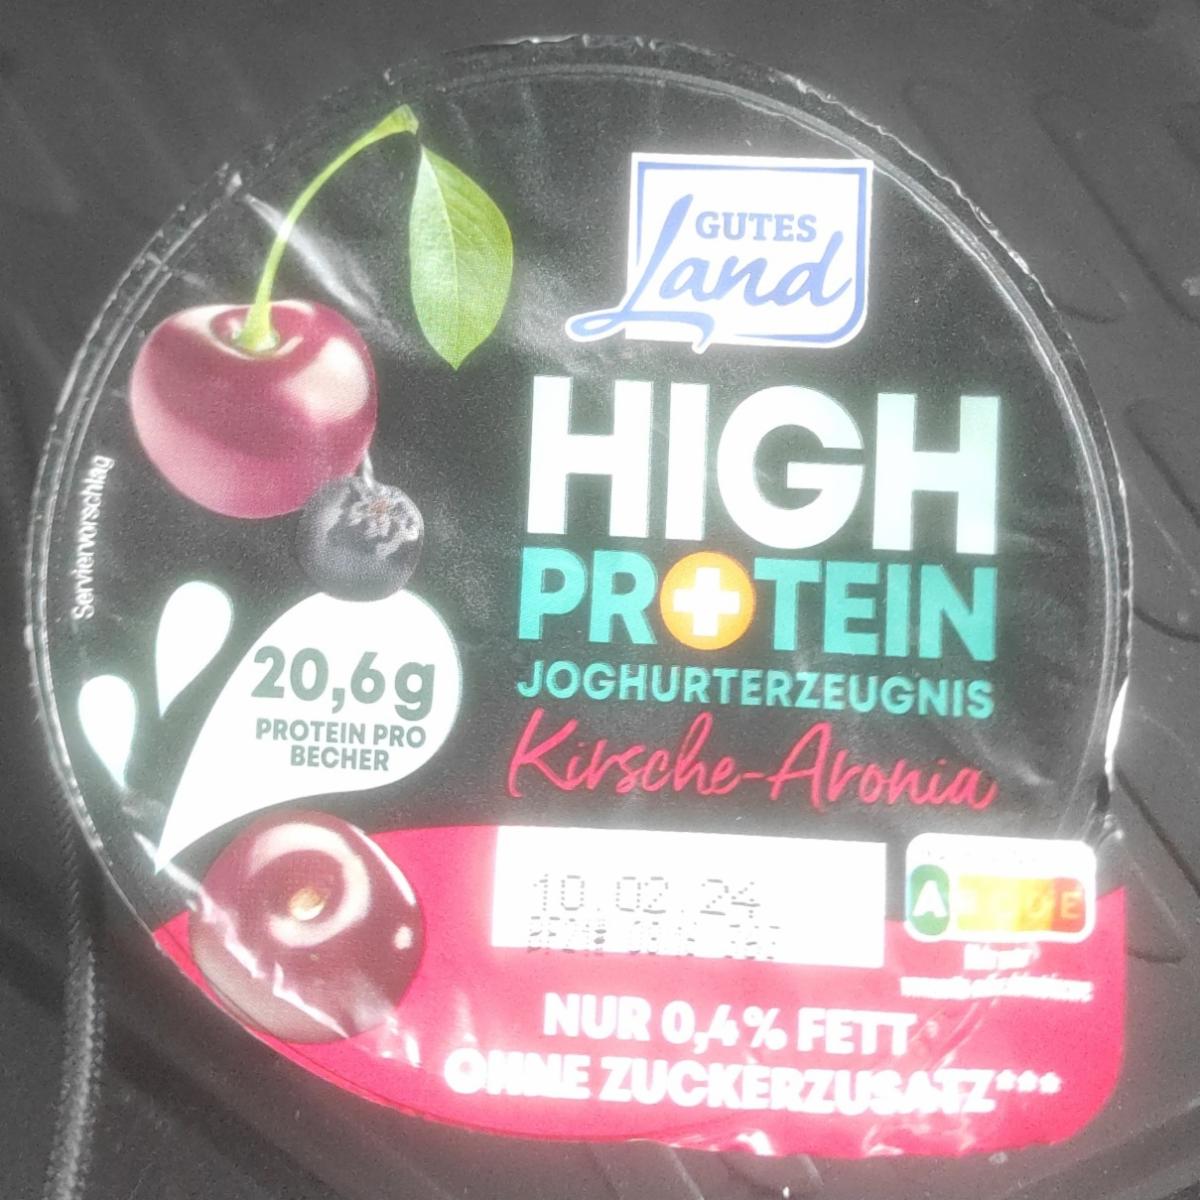 Fotografie - High Protein Joghurterzeugnis Kirsche-Aronia Gutes Land